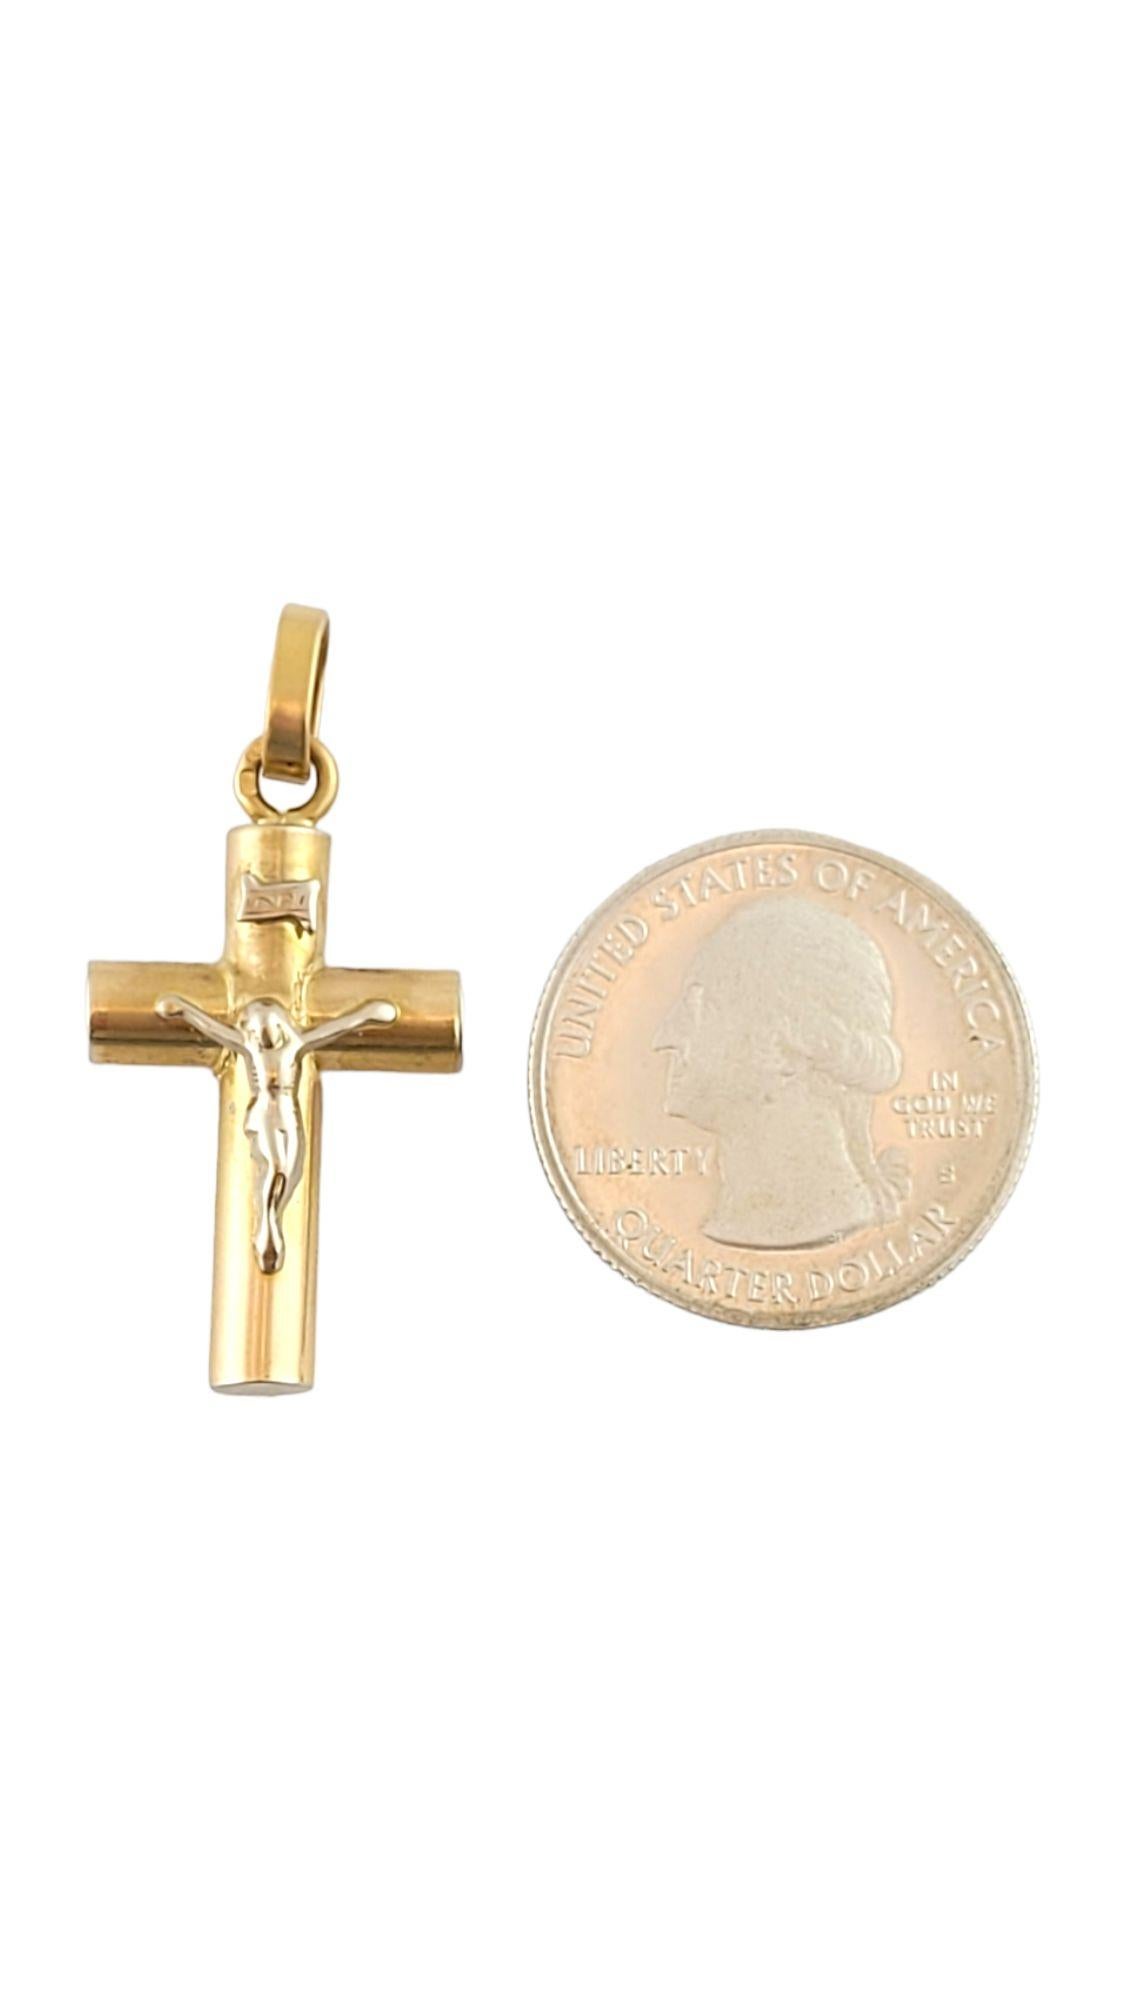 Magnifique pendentif en or portugais blanc et jaune de 19,2 carats représentant Jésus sur une croix !

Taille : 31.7mm X 17.8mm X 7mm

Longueur avec la bague : 38.1mm

Poids : 4,05 g/ 2,6 dwt

Poinçon : 800 avec tête de cerf

Très bon état,